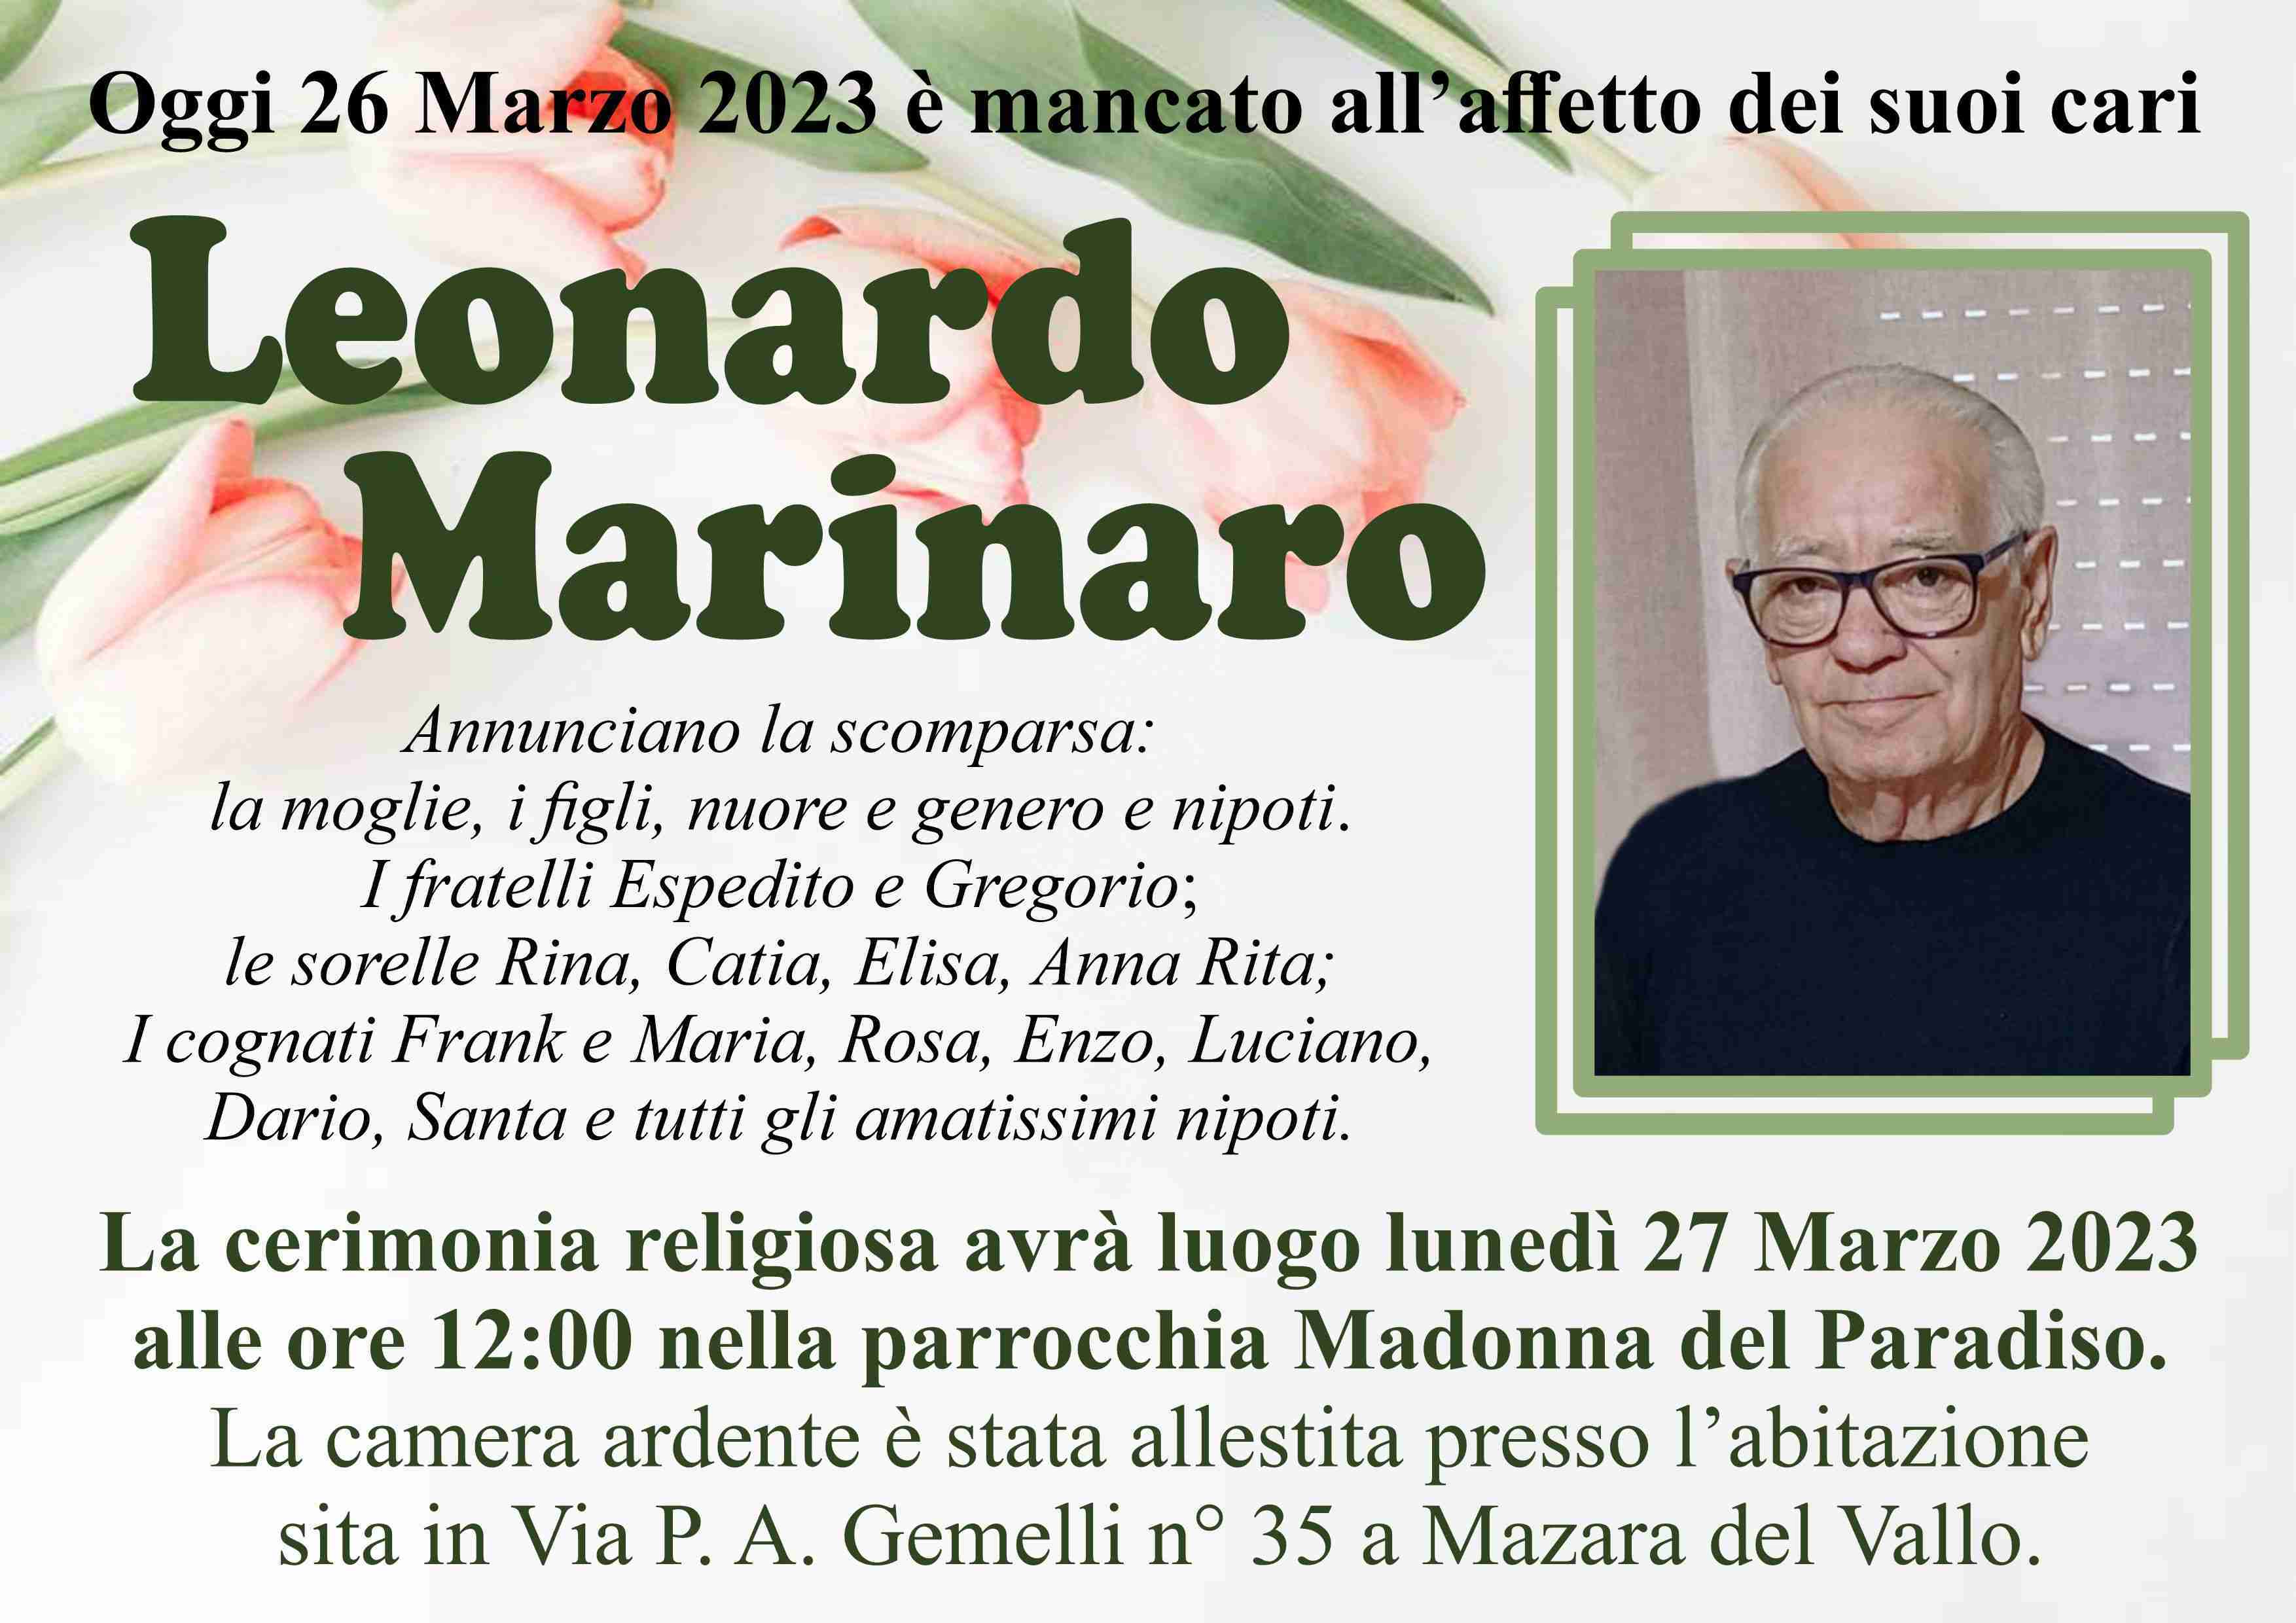 Leonardo Marinaro